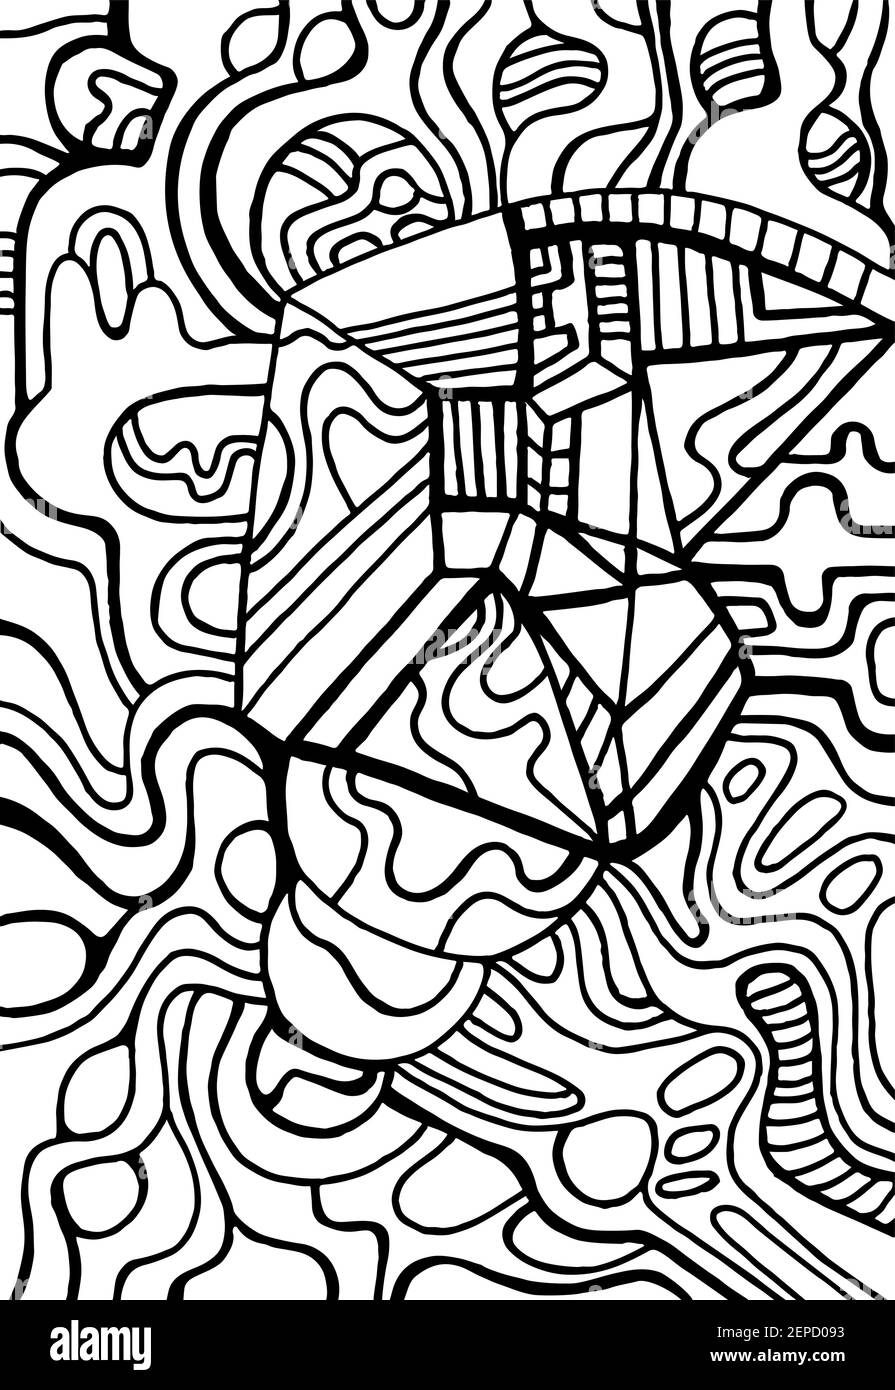 Page de coloriage motif abstrait, labyrinthe d'ornements, isolé sur blanc. Carte psychédélique élégante. Illustration de Vecteur